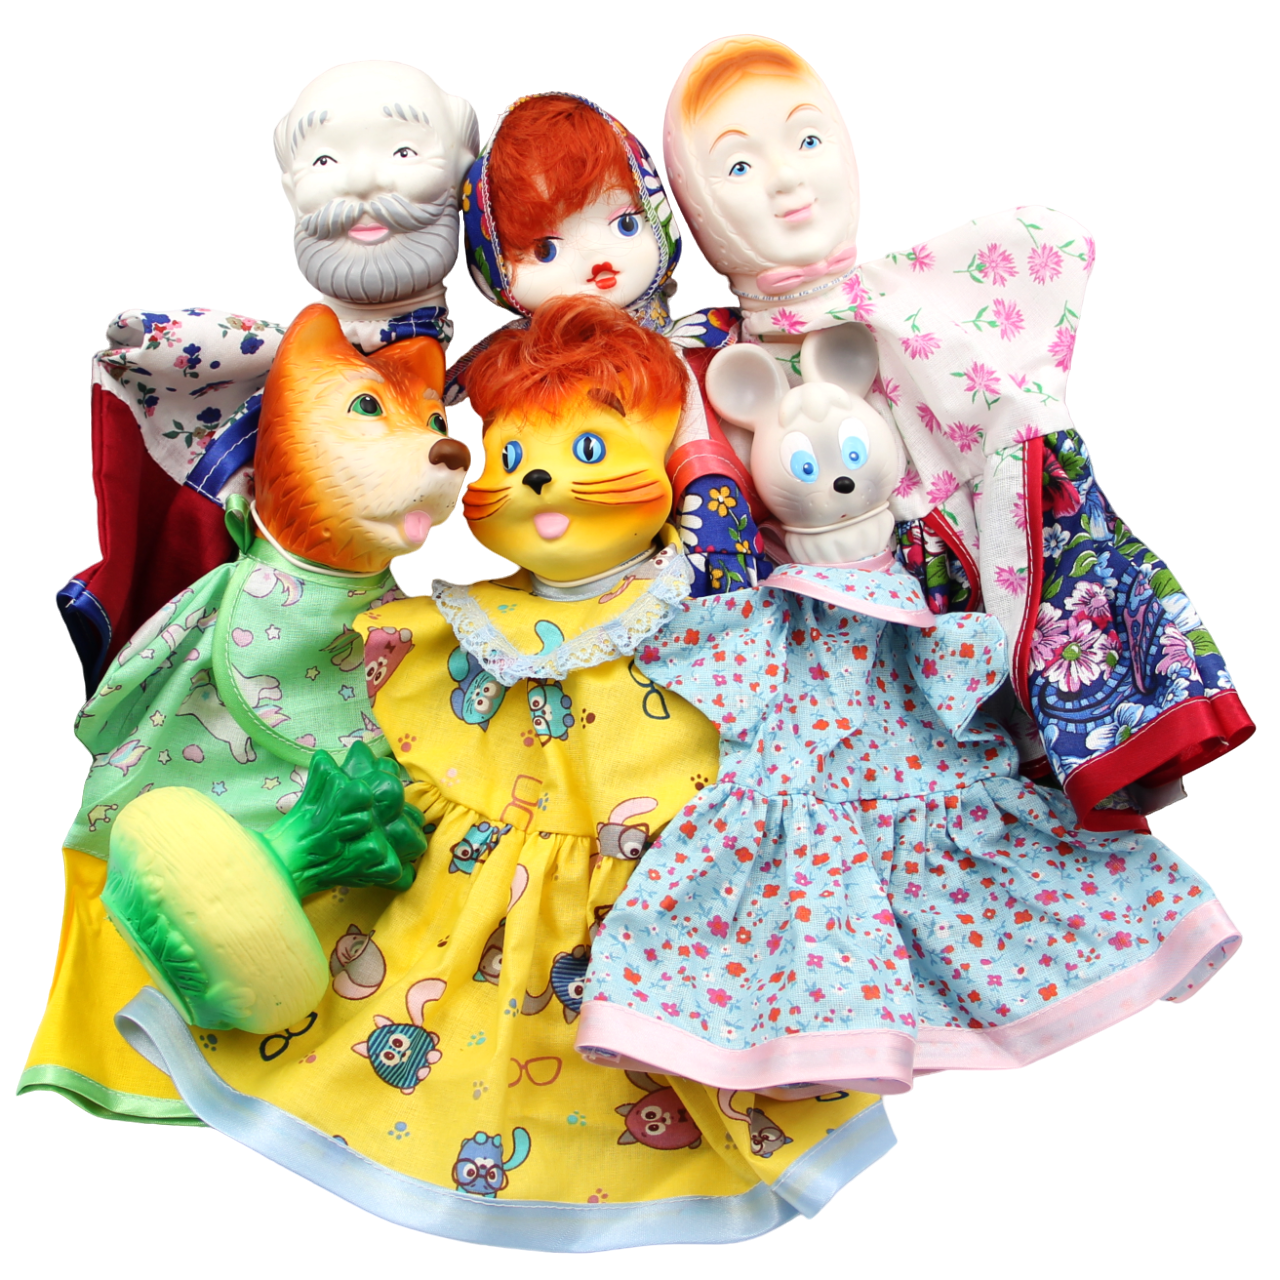 Кукла-перчатка Кудесники Домашний кукольный театр для детей Репка СИ-698-01 десятое королевство театр кукольный домашний курочка ряба 4 куклы перчатки